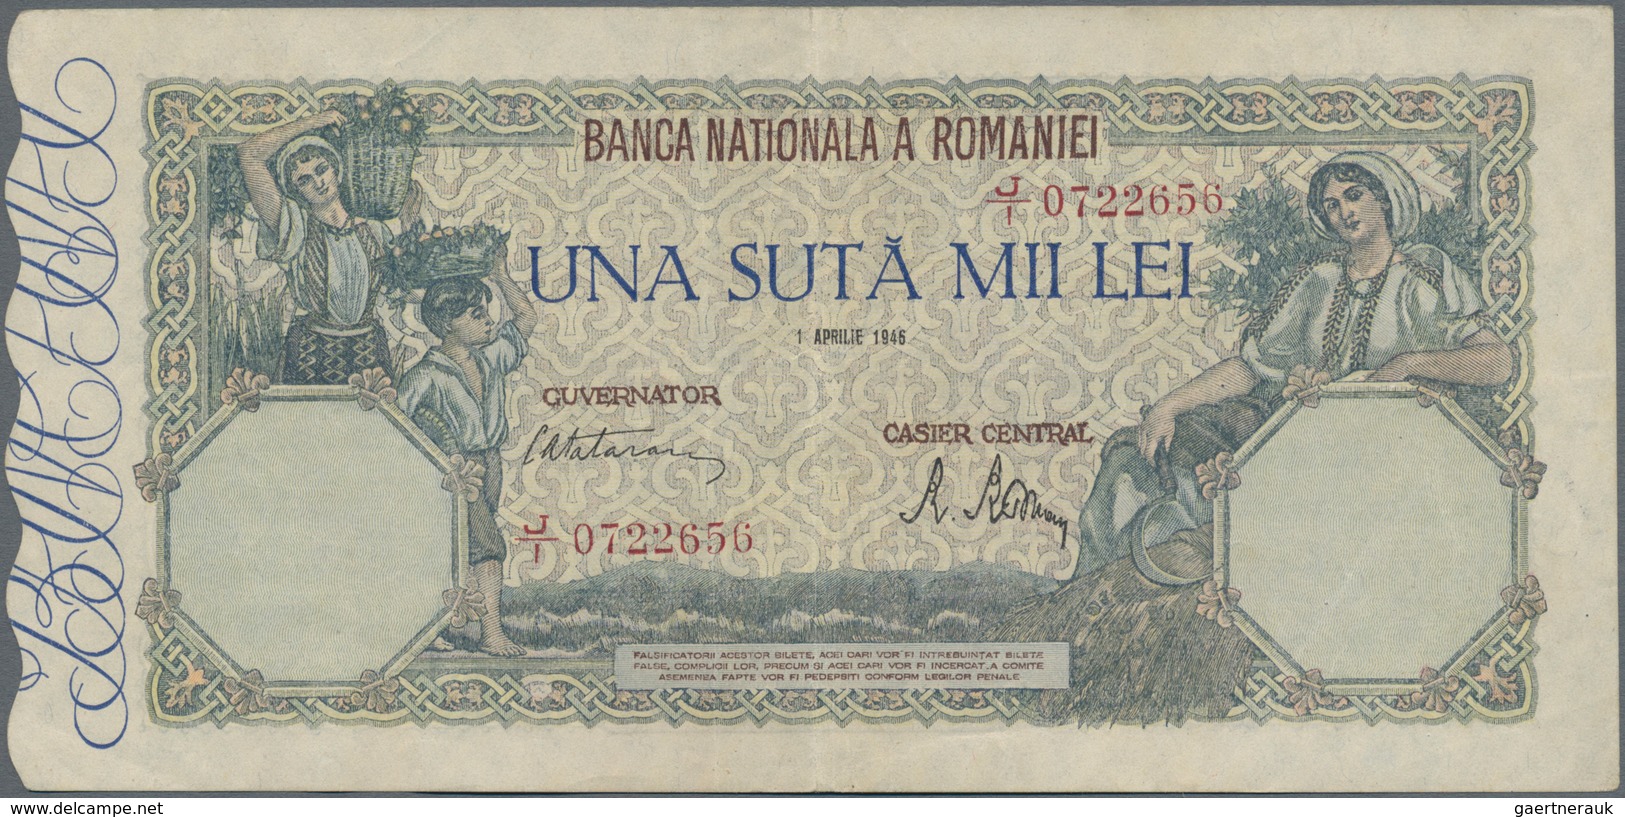 Romania / Rumänien: Banca Naţională a României set with 6 banknotes 20 Lei 1917 and 1929, P.20 (F, o